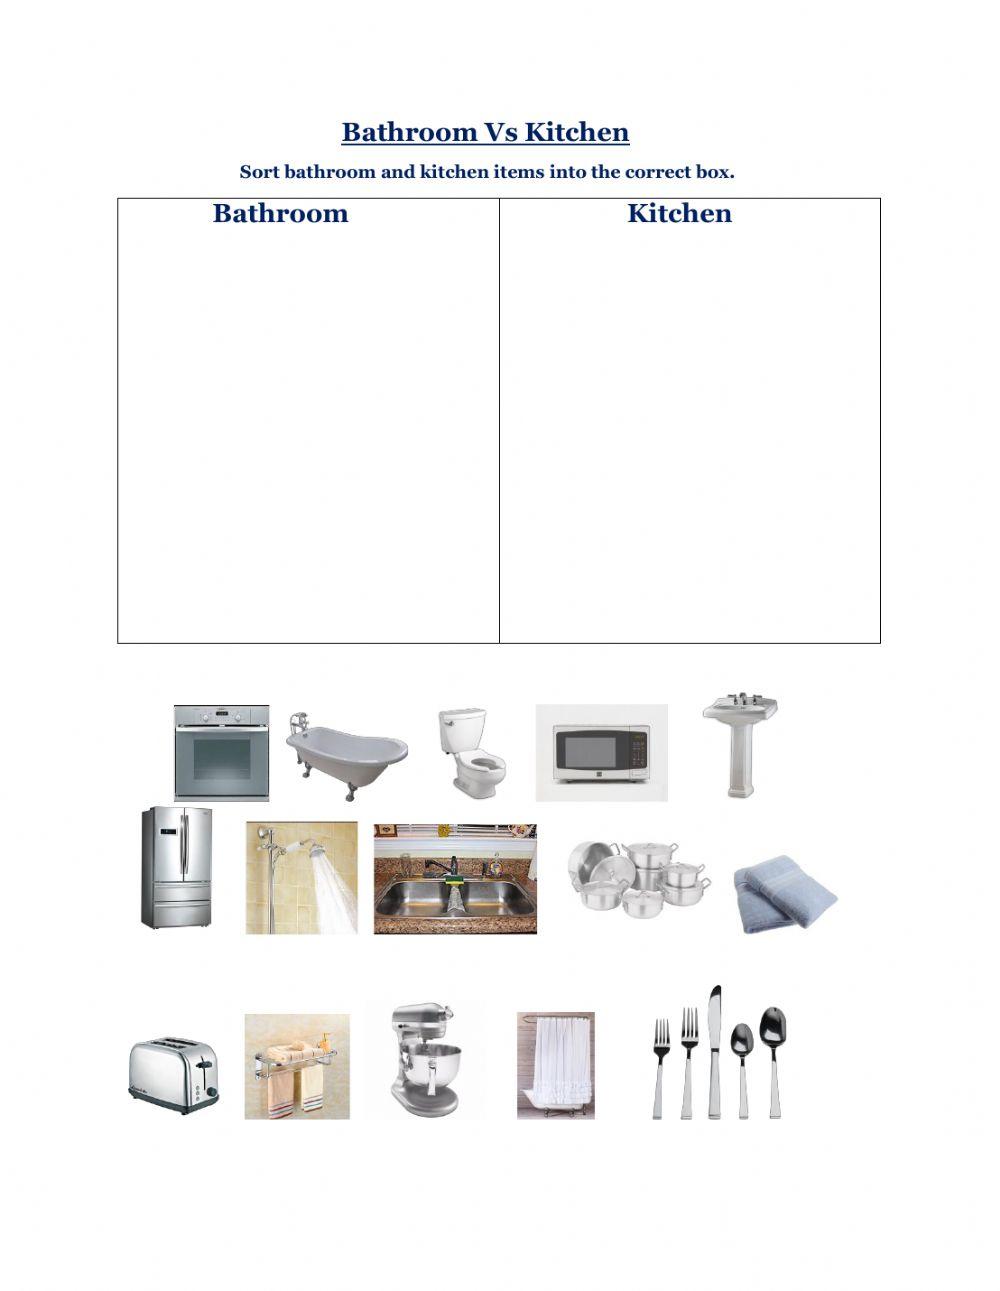 Bathroom vs Kitchen